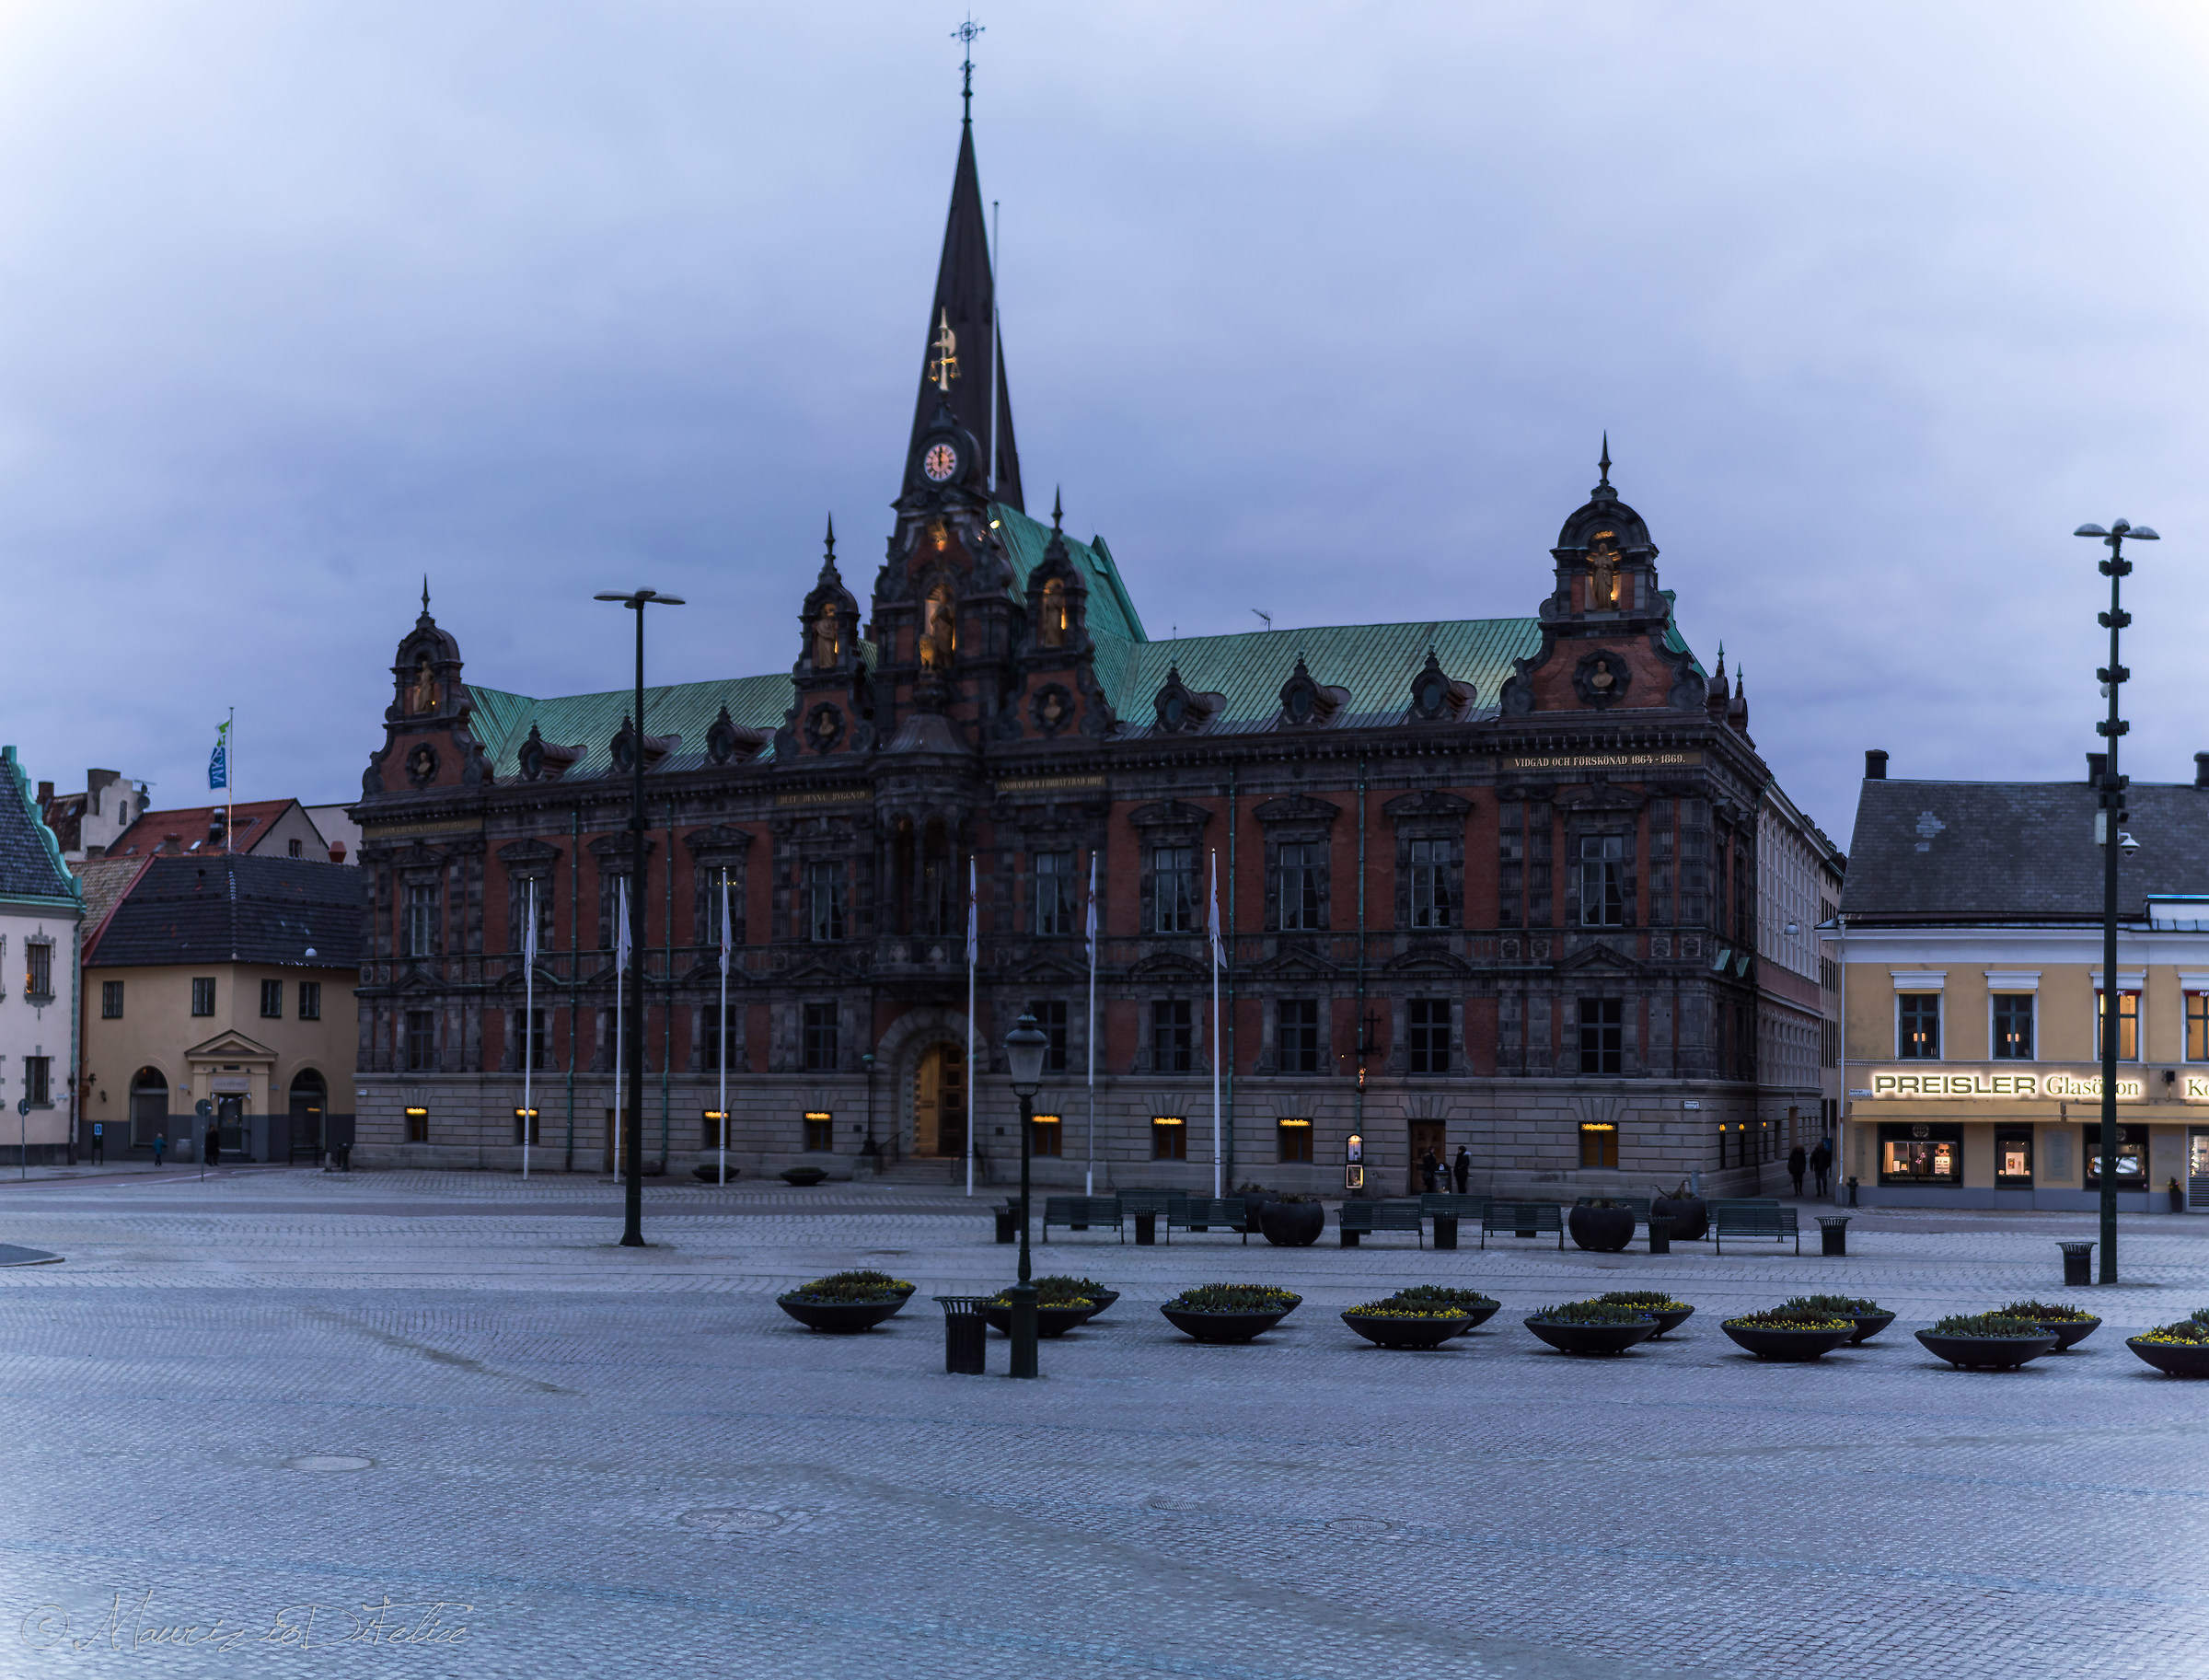 Un palazzo tipico dell'800 svedese......